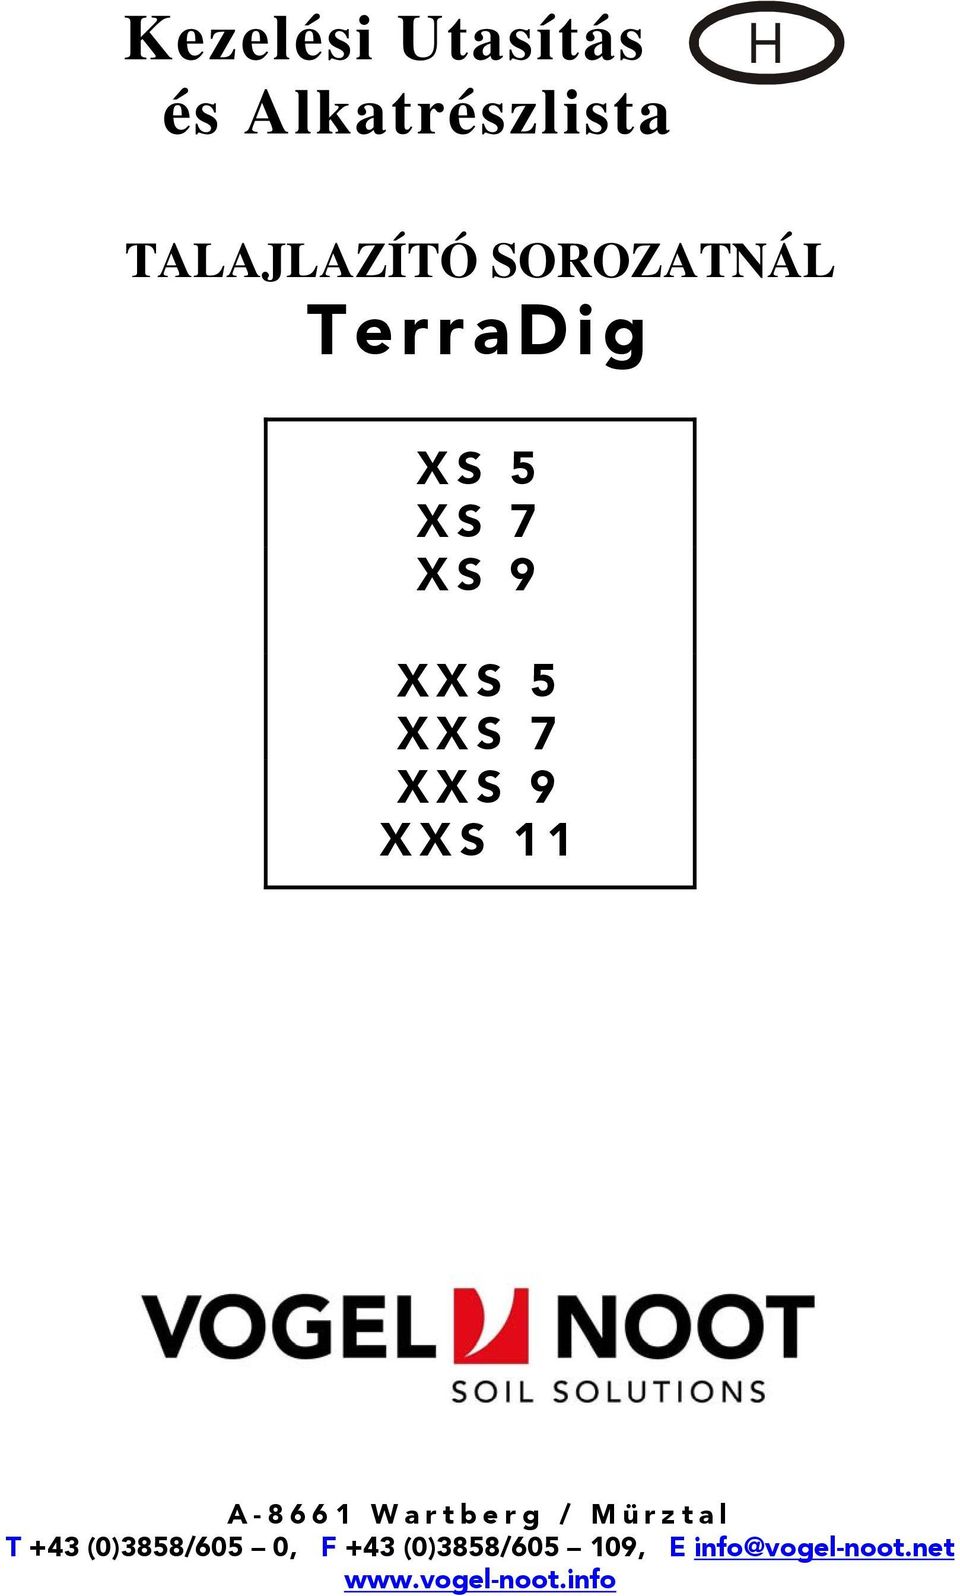 XXS 11 A-8661 Wartberg / Mürztal T +43 (0)3858/605 0, F